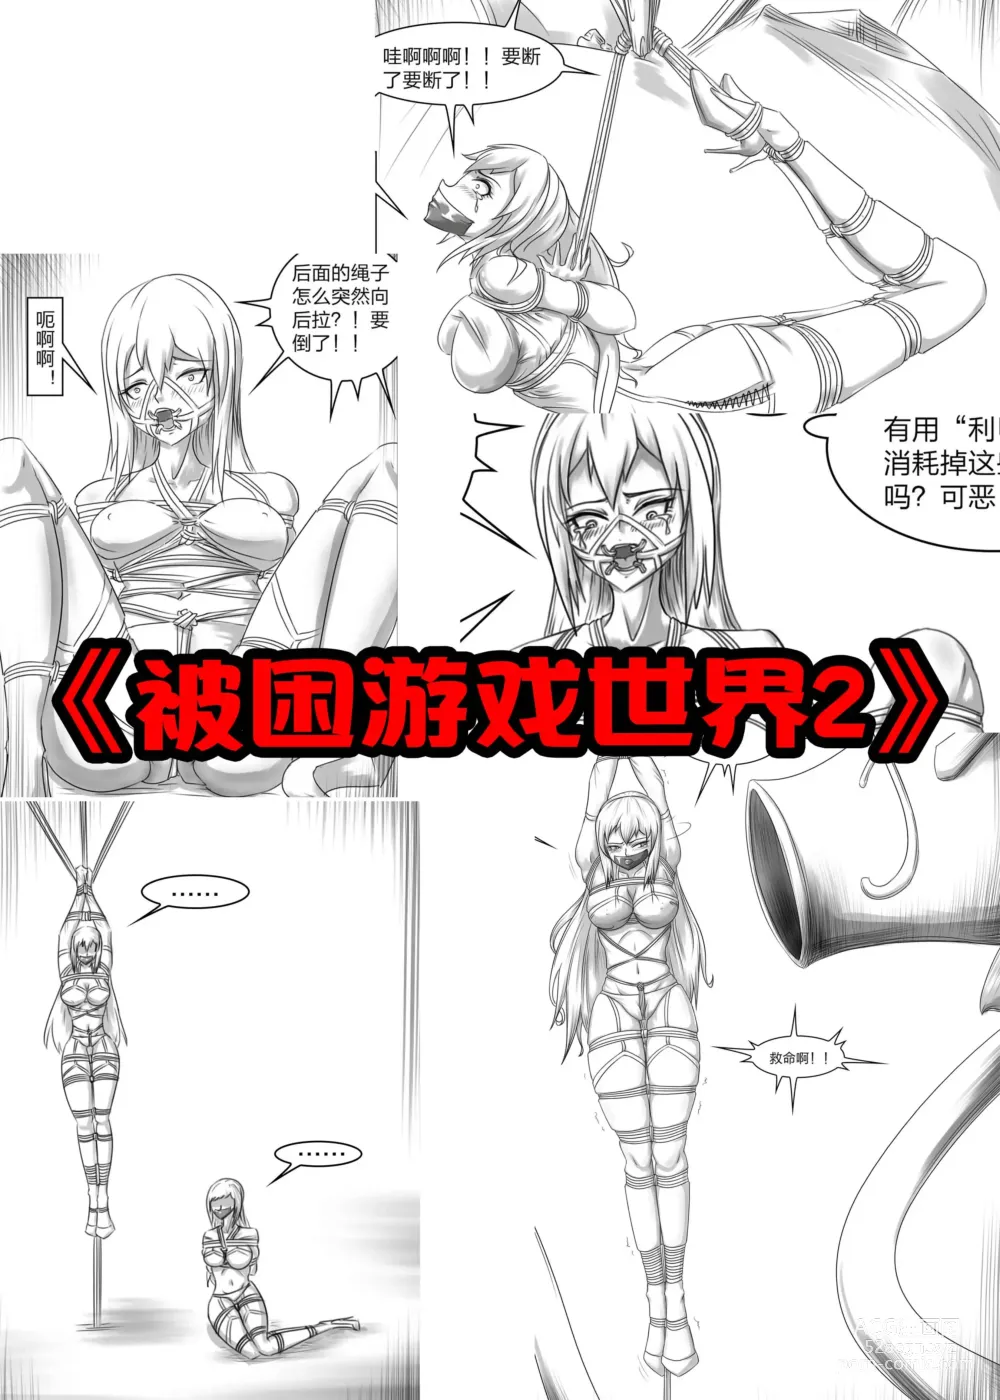 Page 1 of doujinshi 《被困游戏世界2》